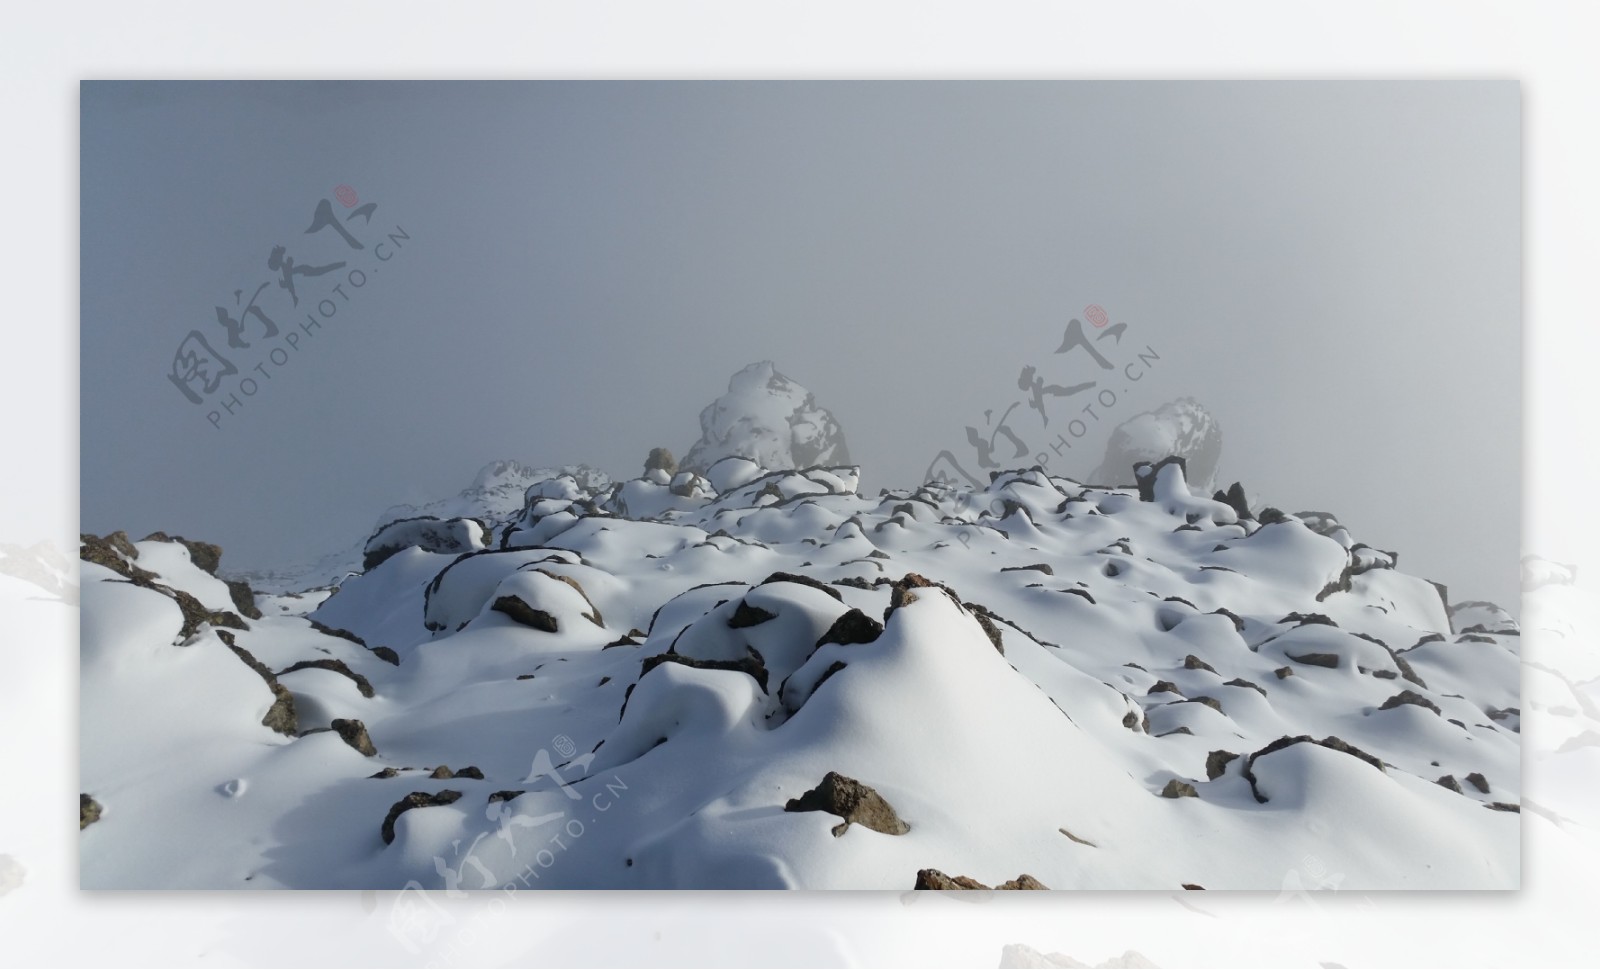 唯美雪山积雪风景图片